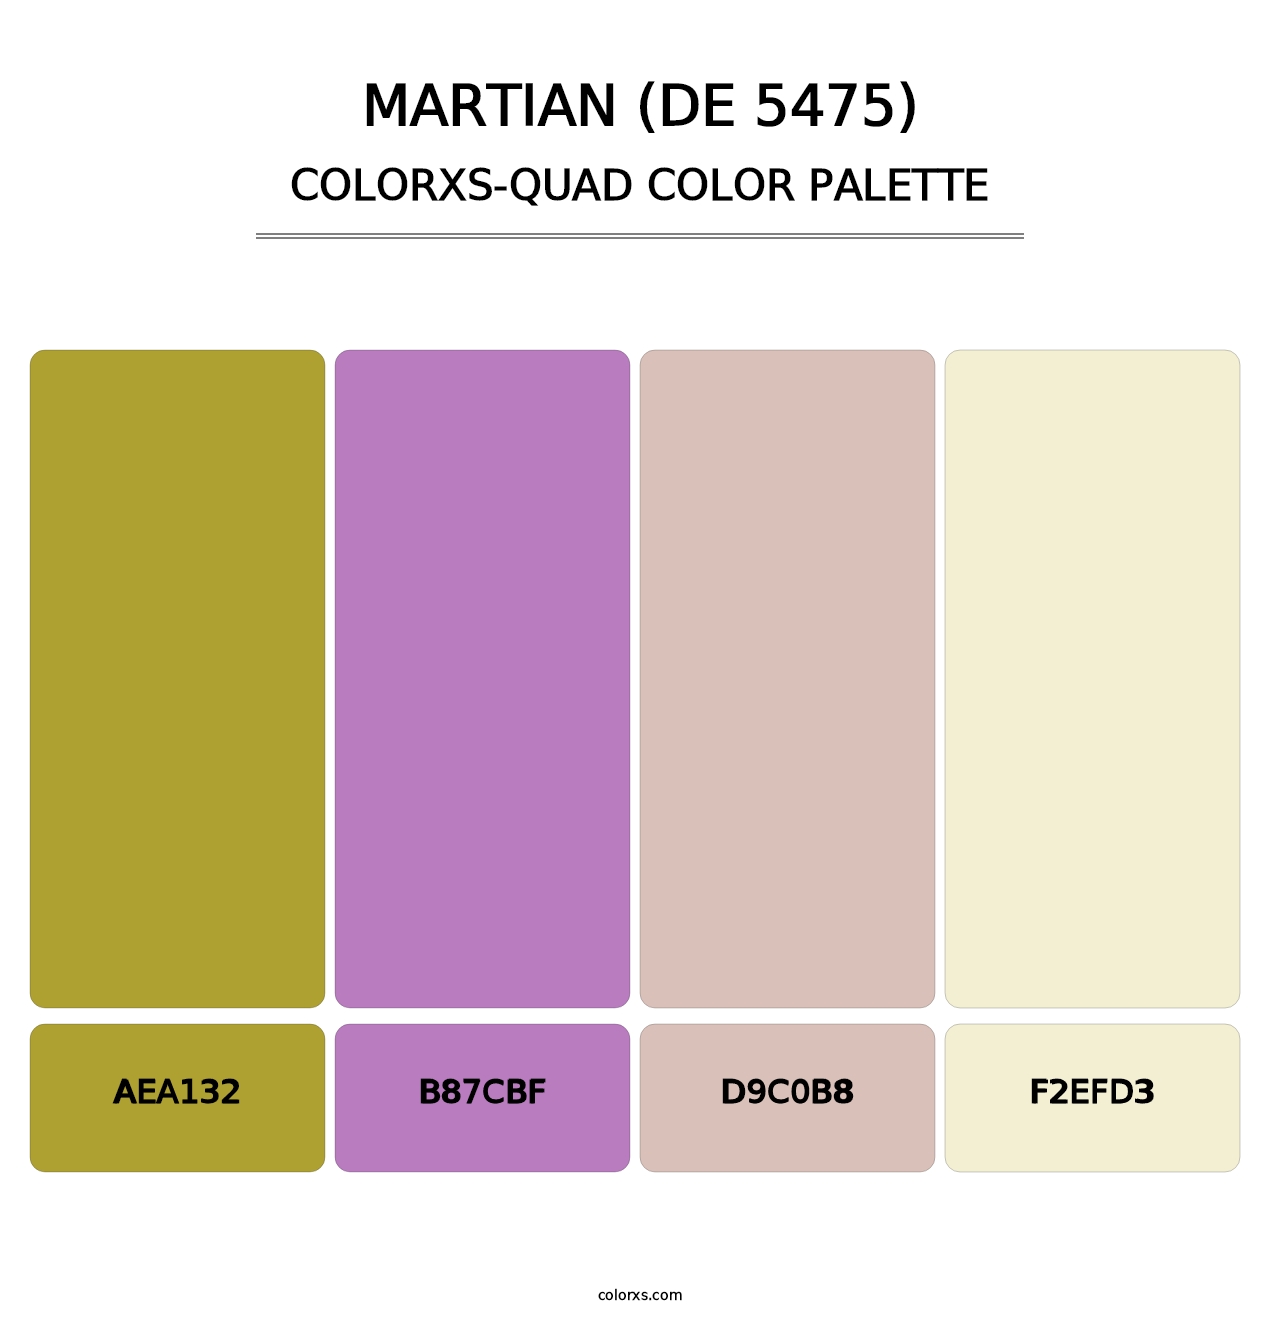 Martian (DE 5475) - Colorxs Quad Palette